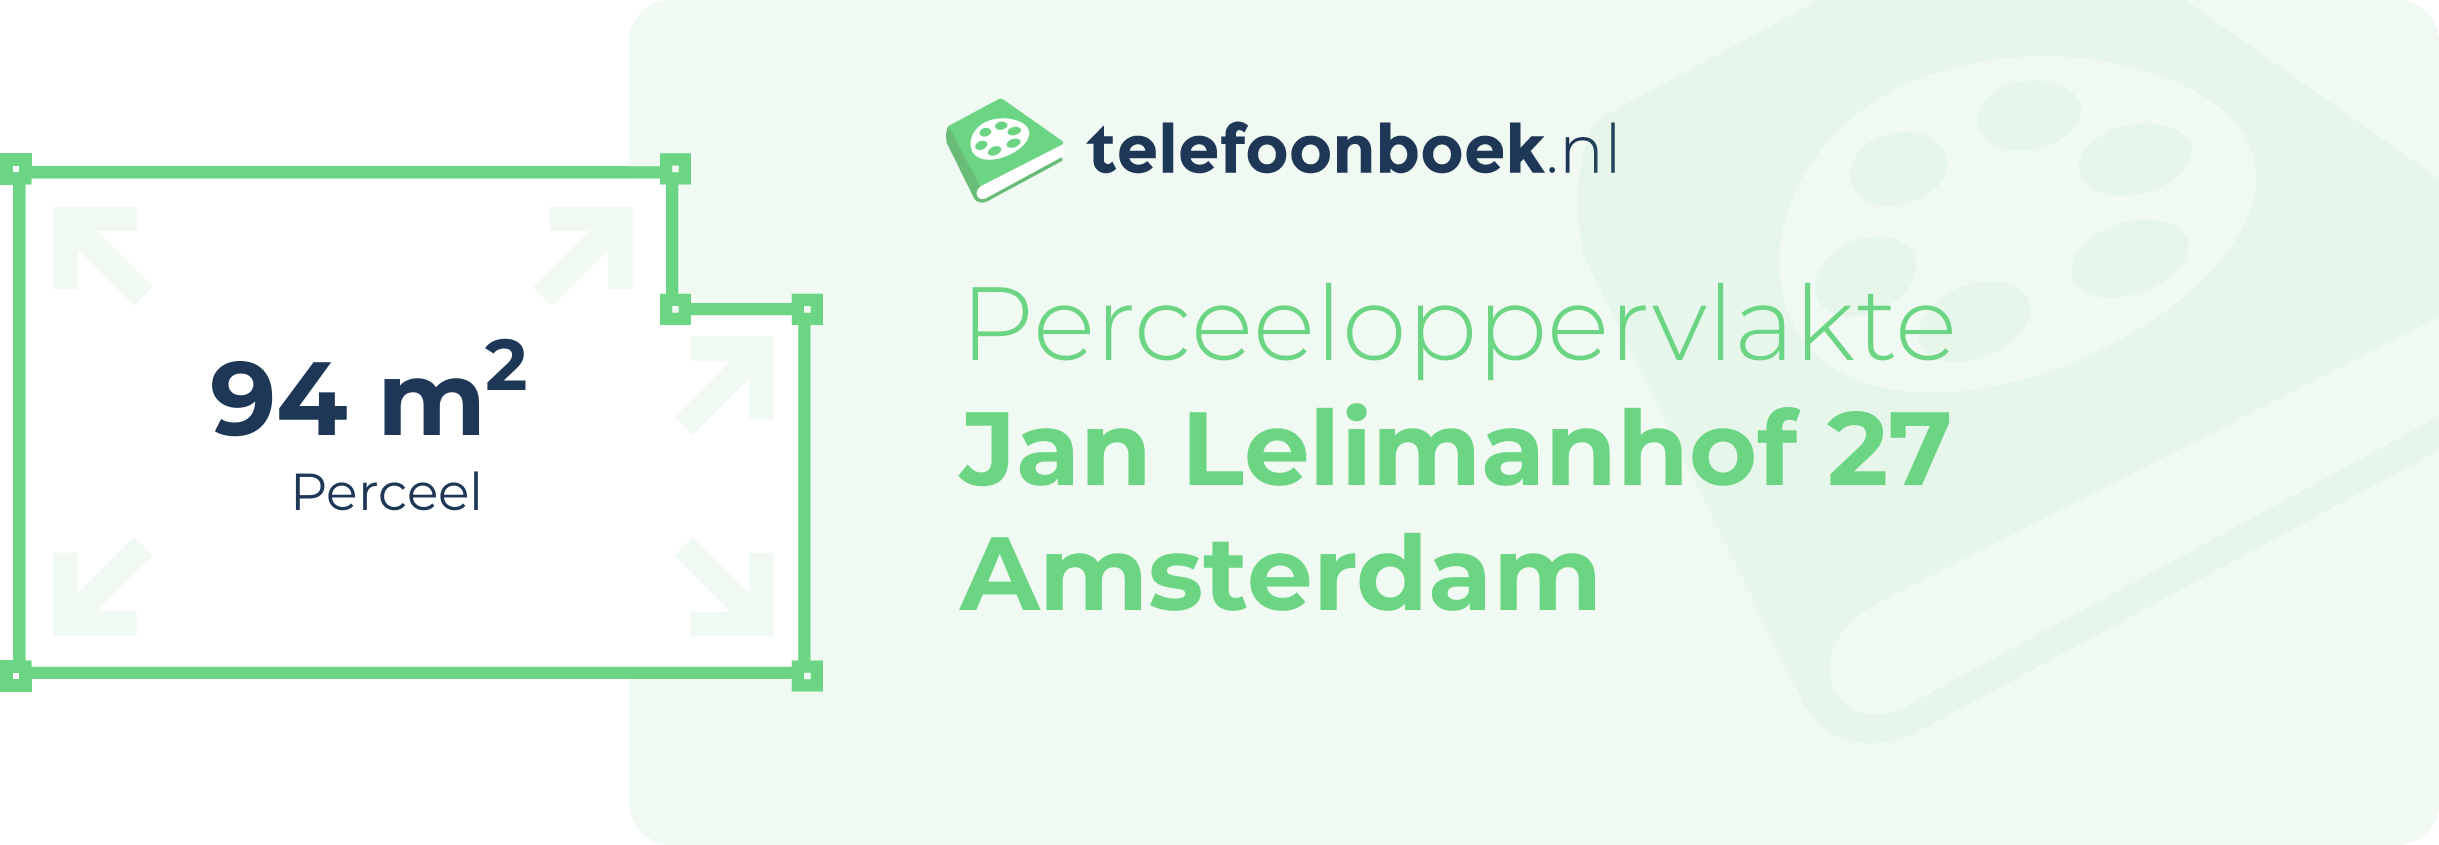 Perceeloppervlakte Jan Lelimanhof 27 Amsterdam